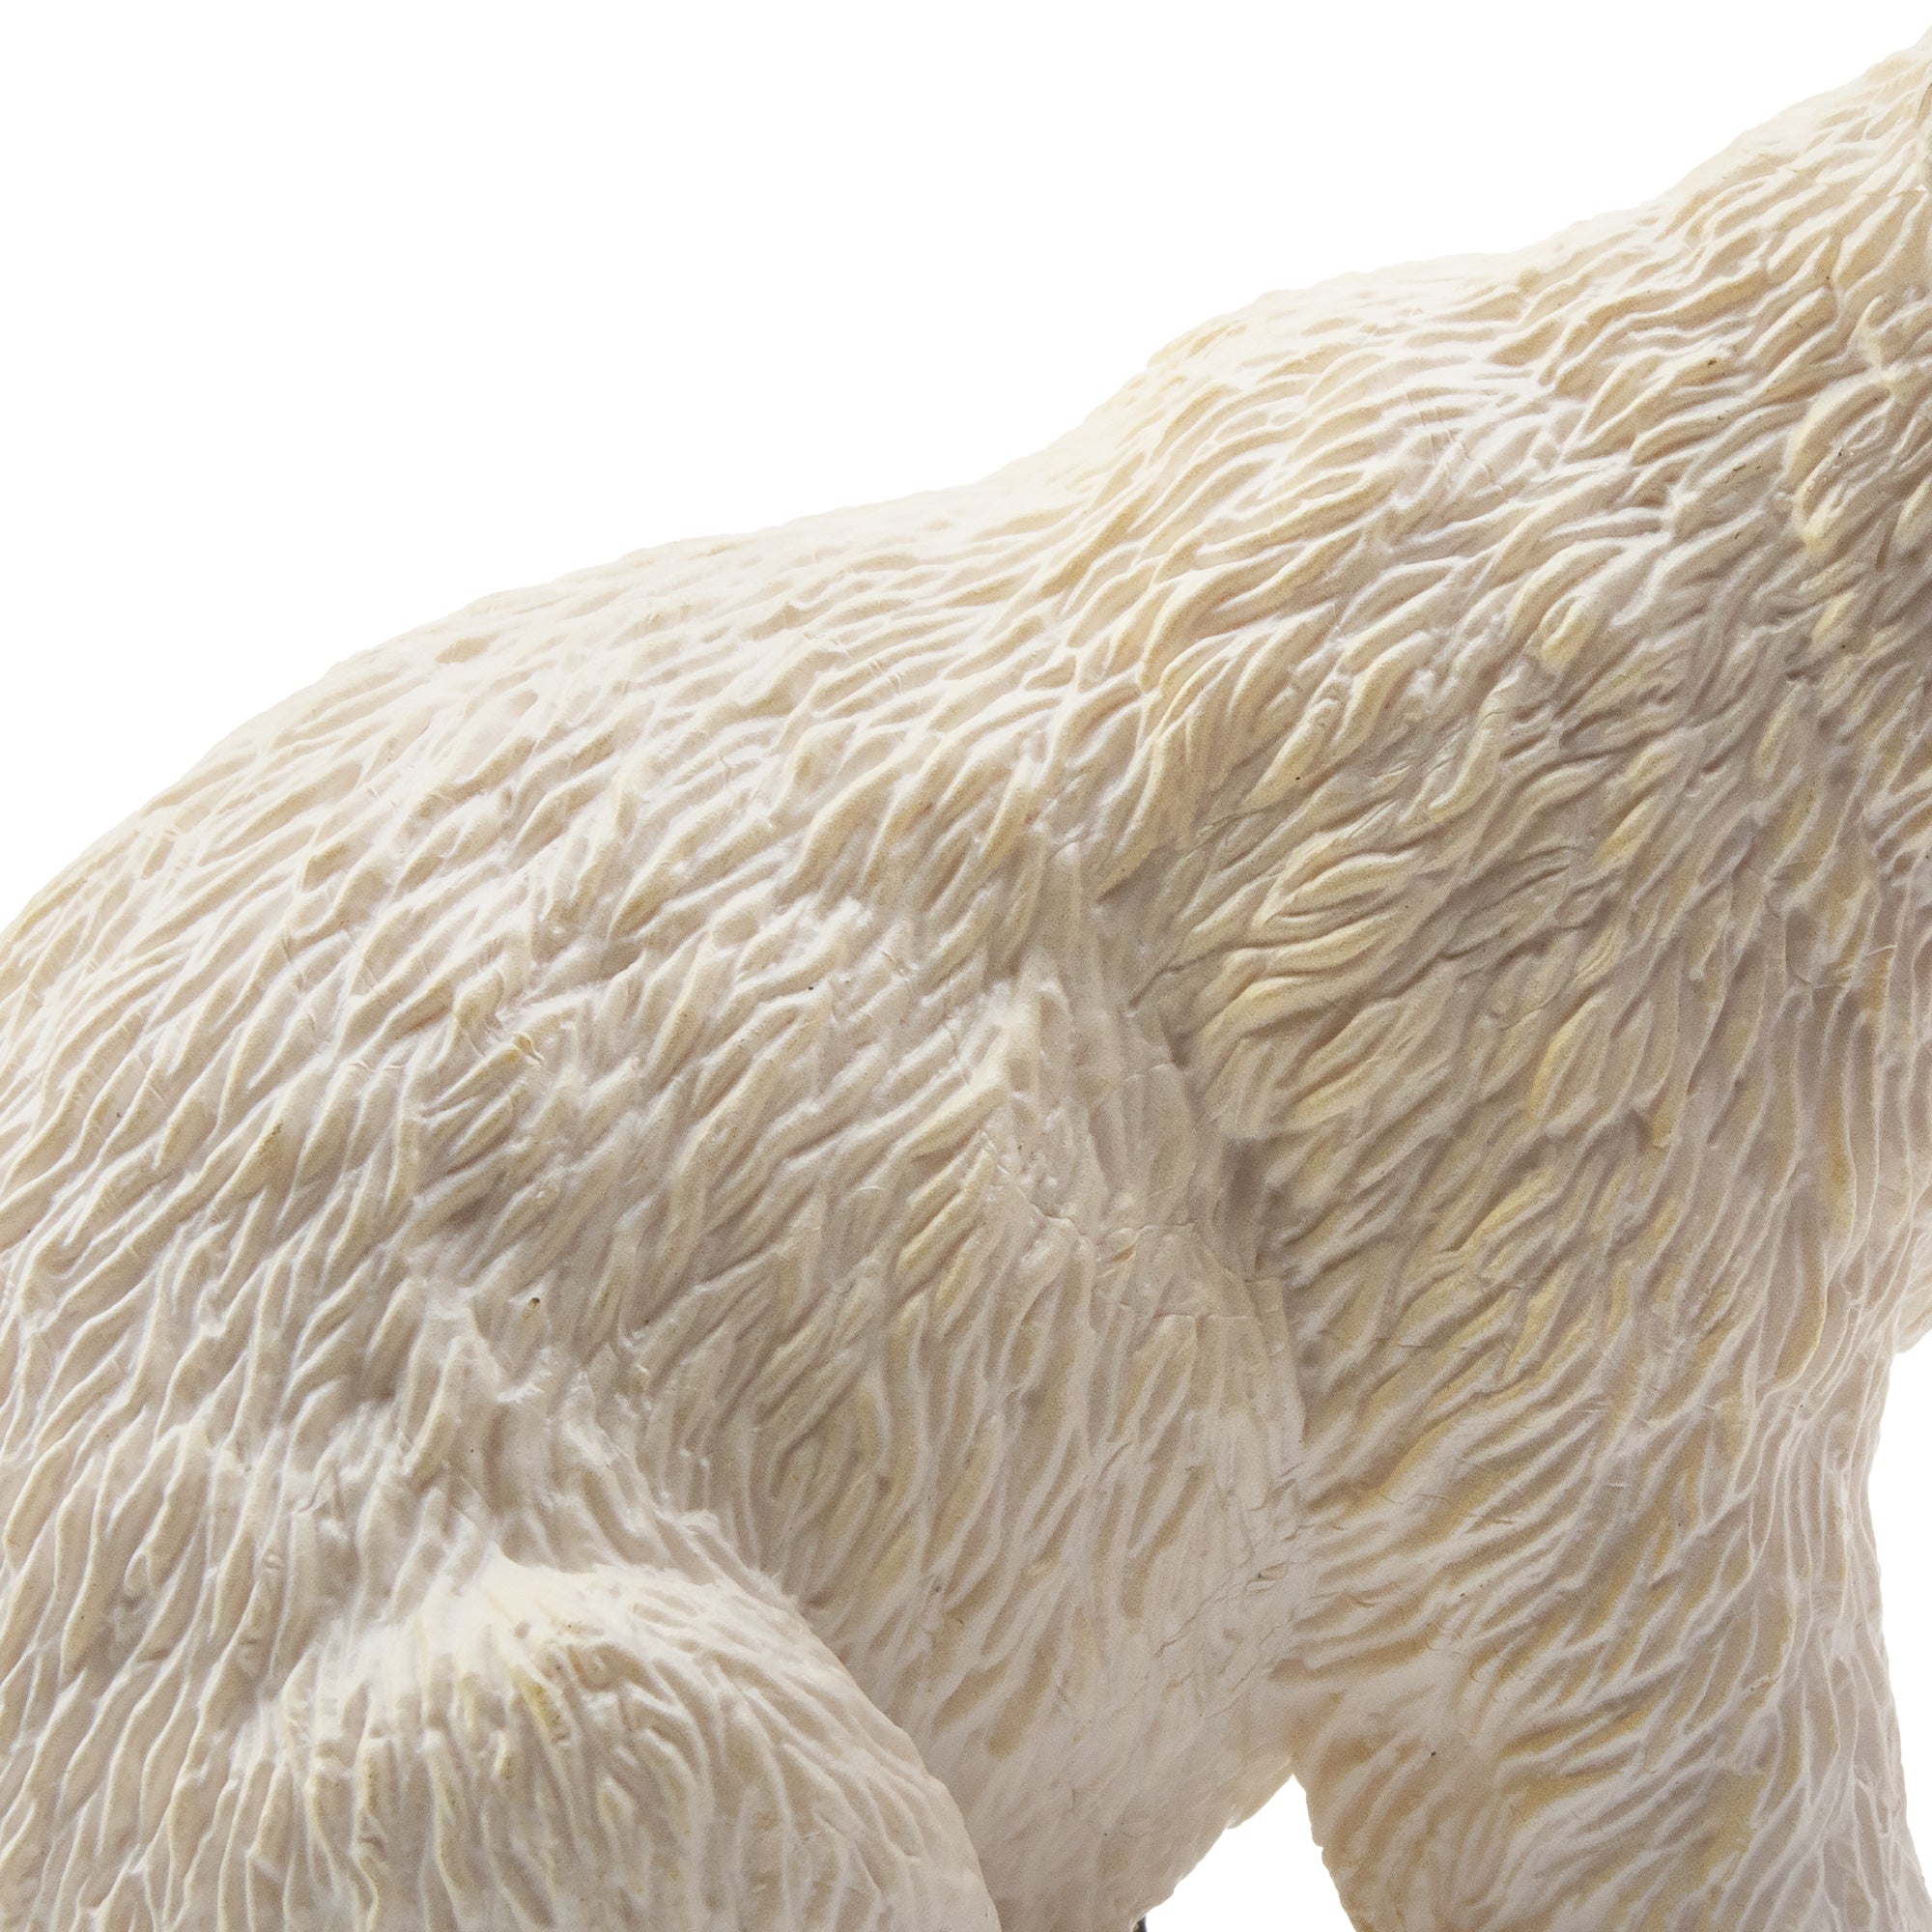 Toymany Female Polar Bear Figurine Toy-detail 2